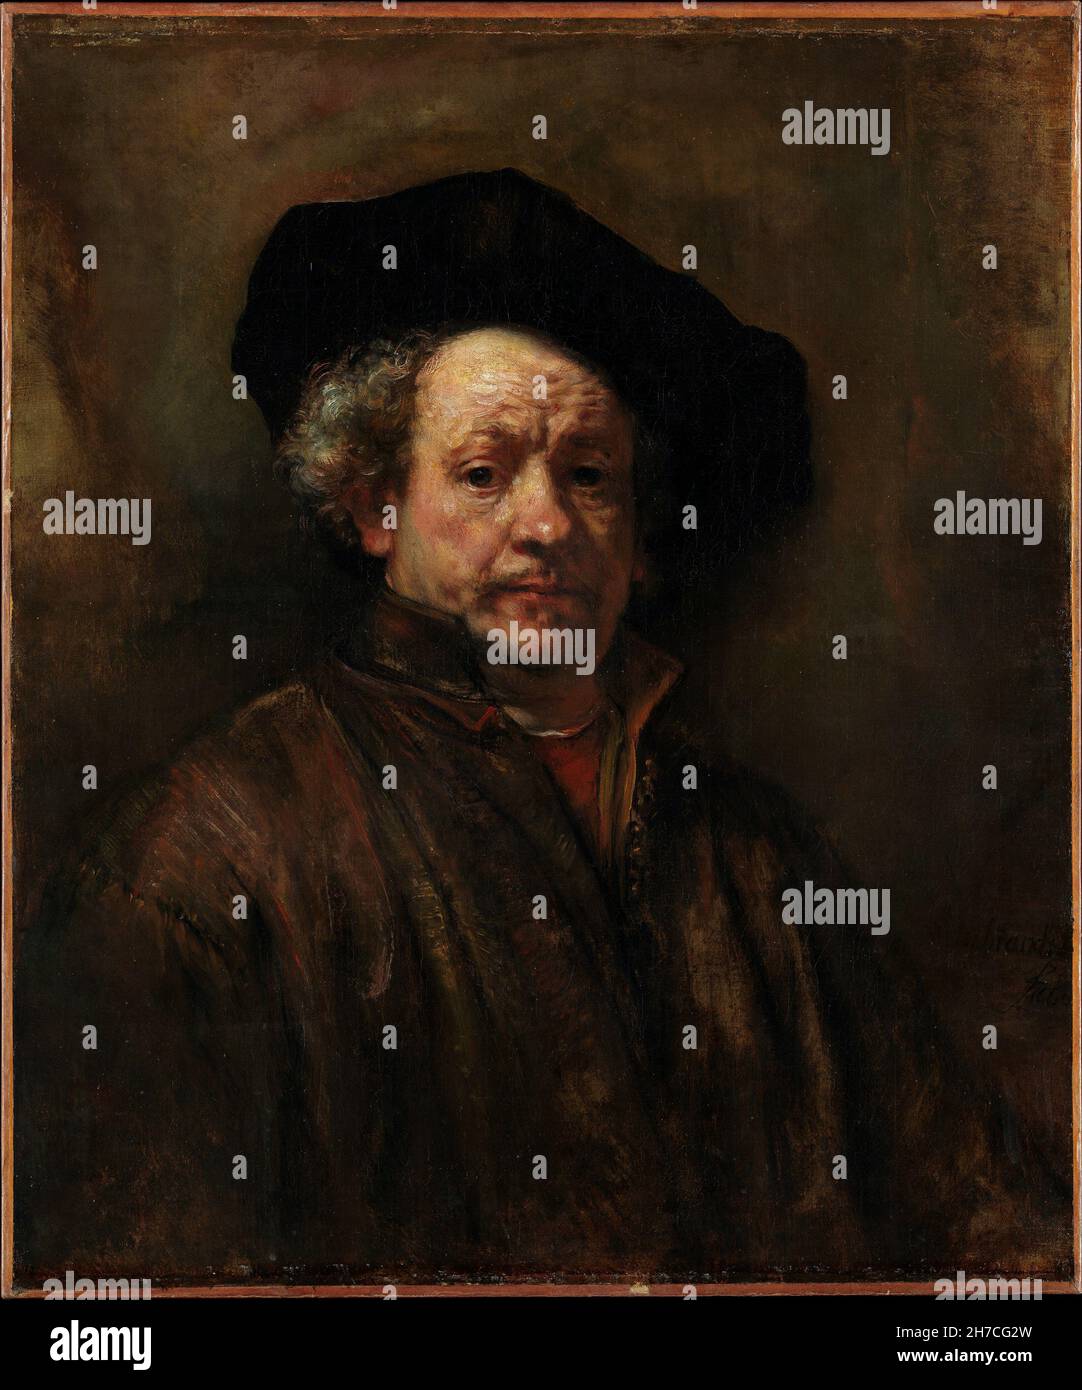 Rembrandt van Rijn, Self Portrait, 1660, huile sur toile, New York,ÉTATS-UNIS Banque D'Images